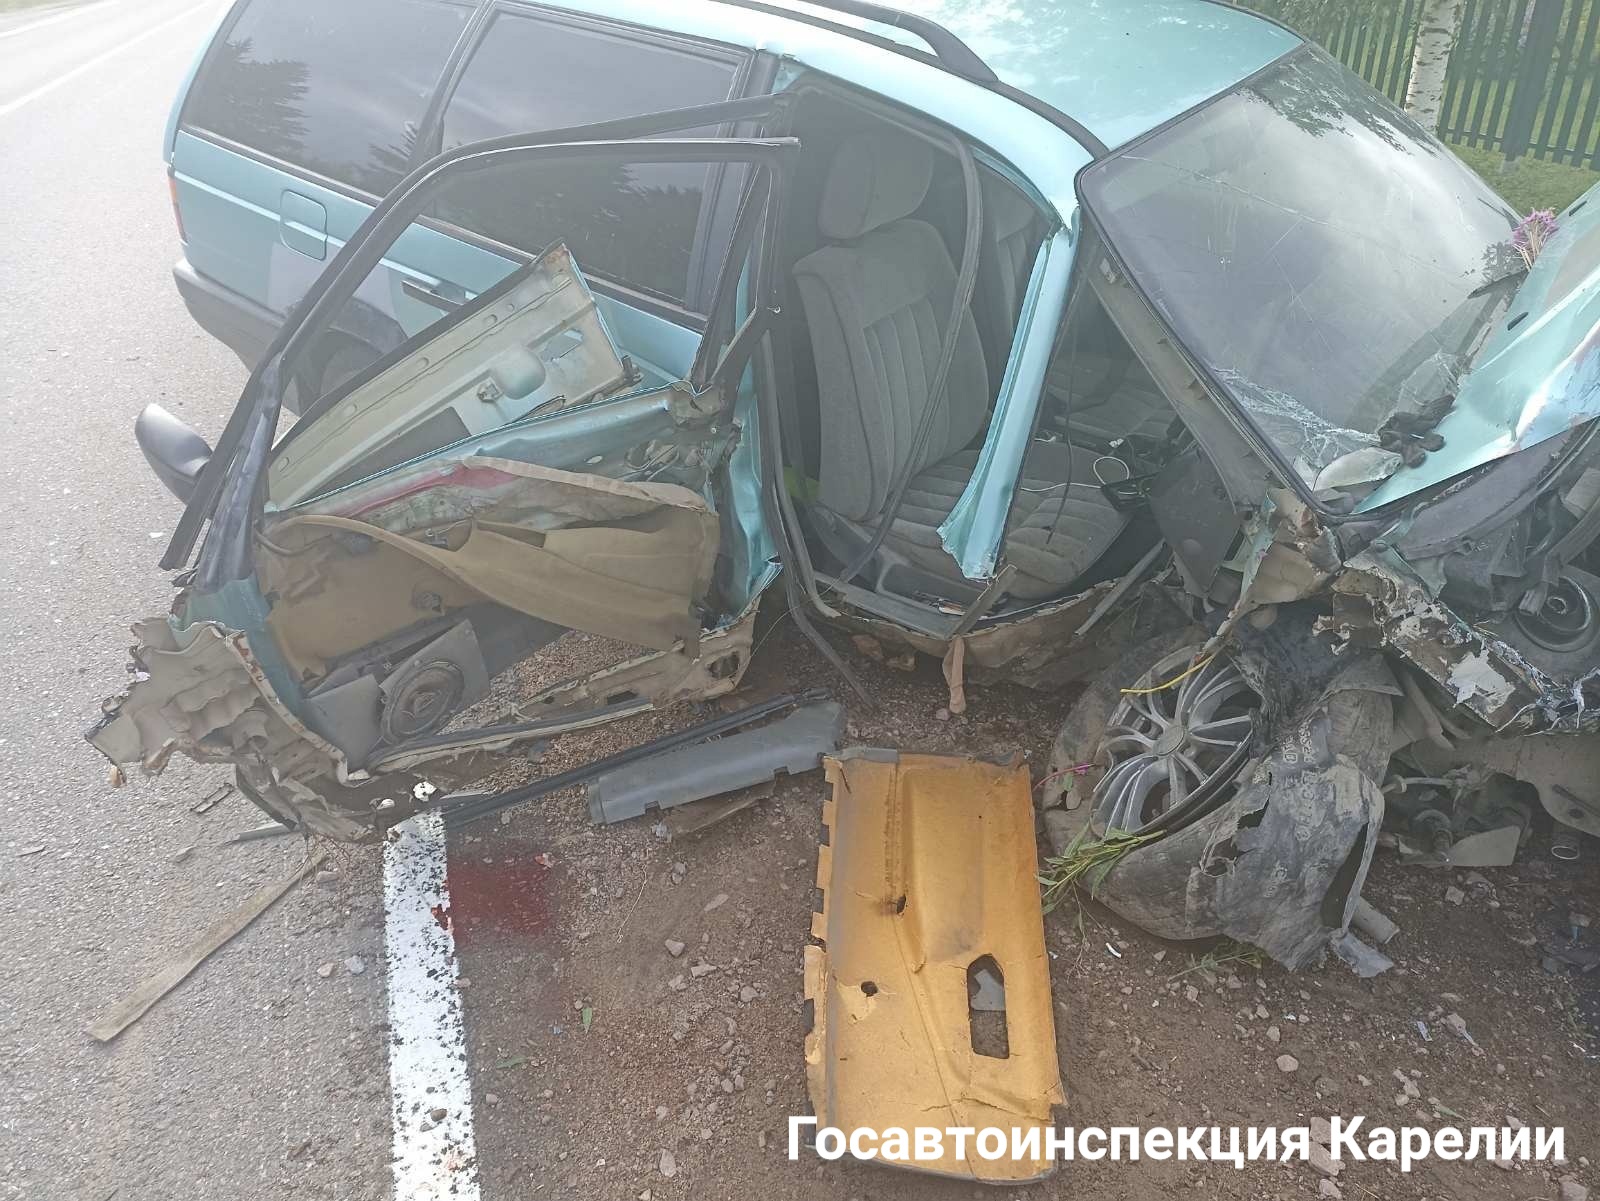 Водитель отвлекся, и автомобиль влетел в электрический столб: появились подробности ДТП на юге Карелии